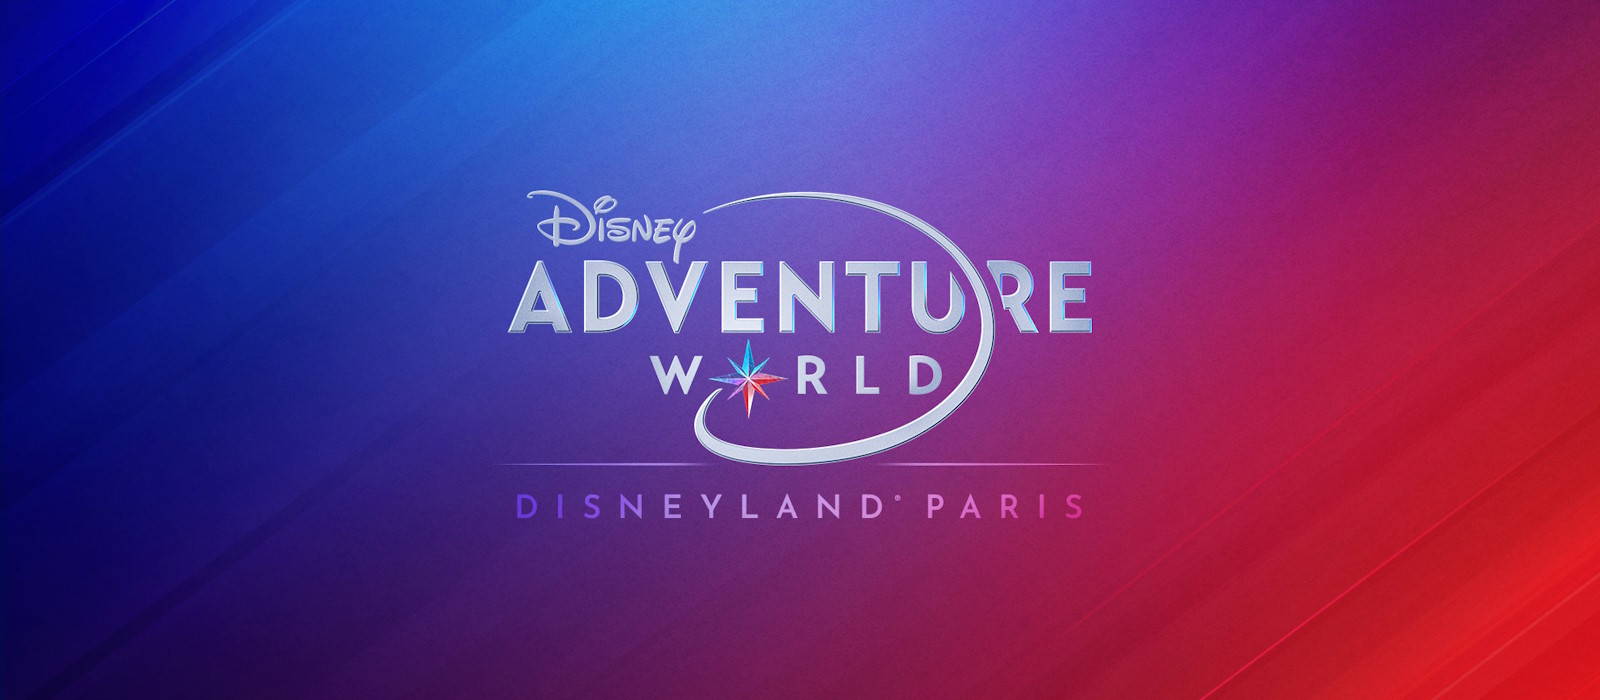 Disney Adventure World <br> in Disneyland Paris